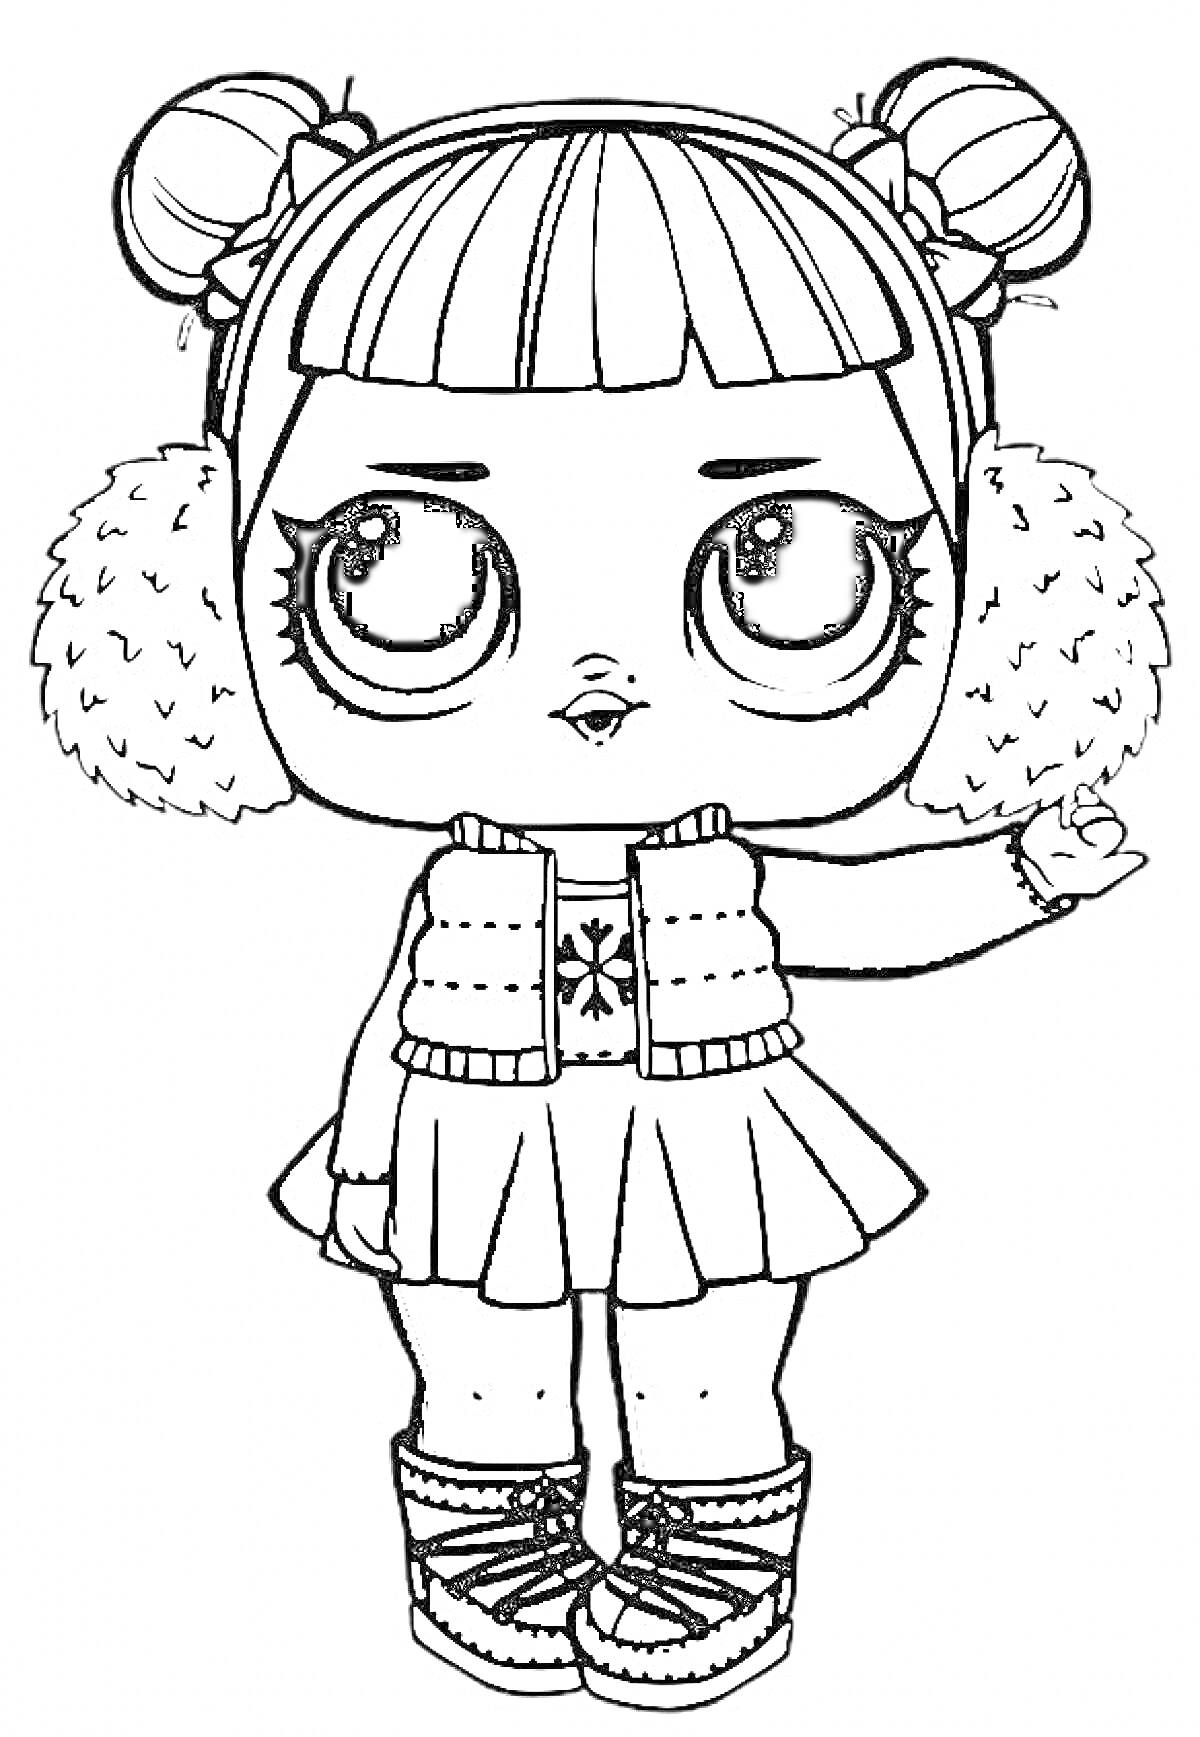 Раскраска Кукла Лол в наушниках с мехом, вязаном жилете, юбке и сапогах